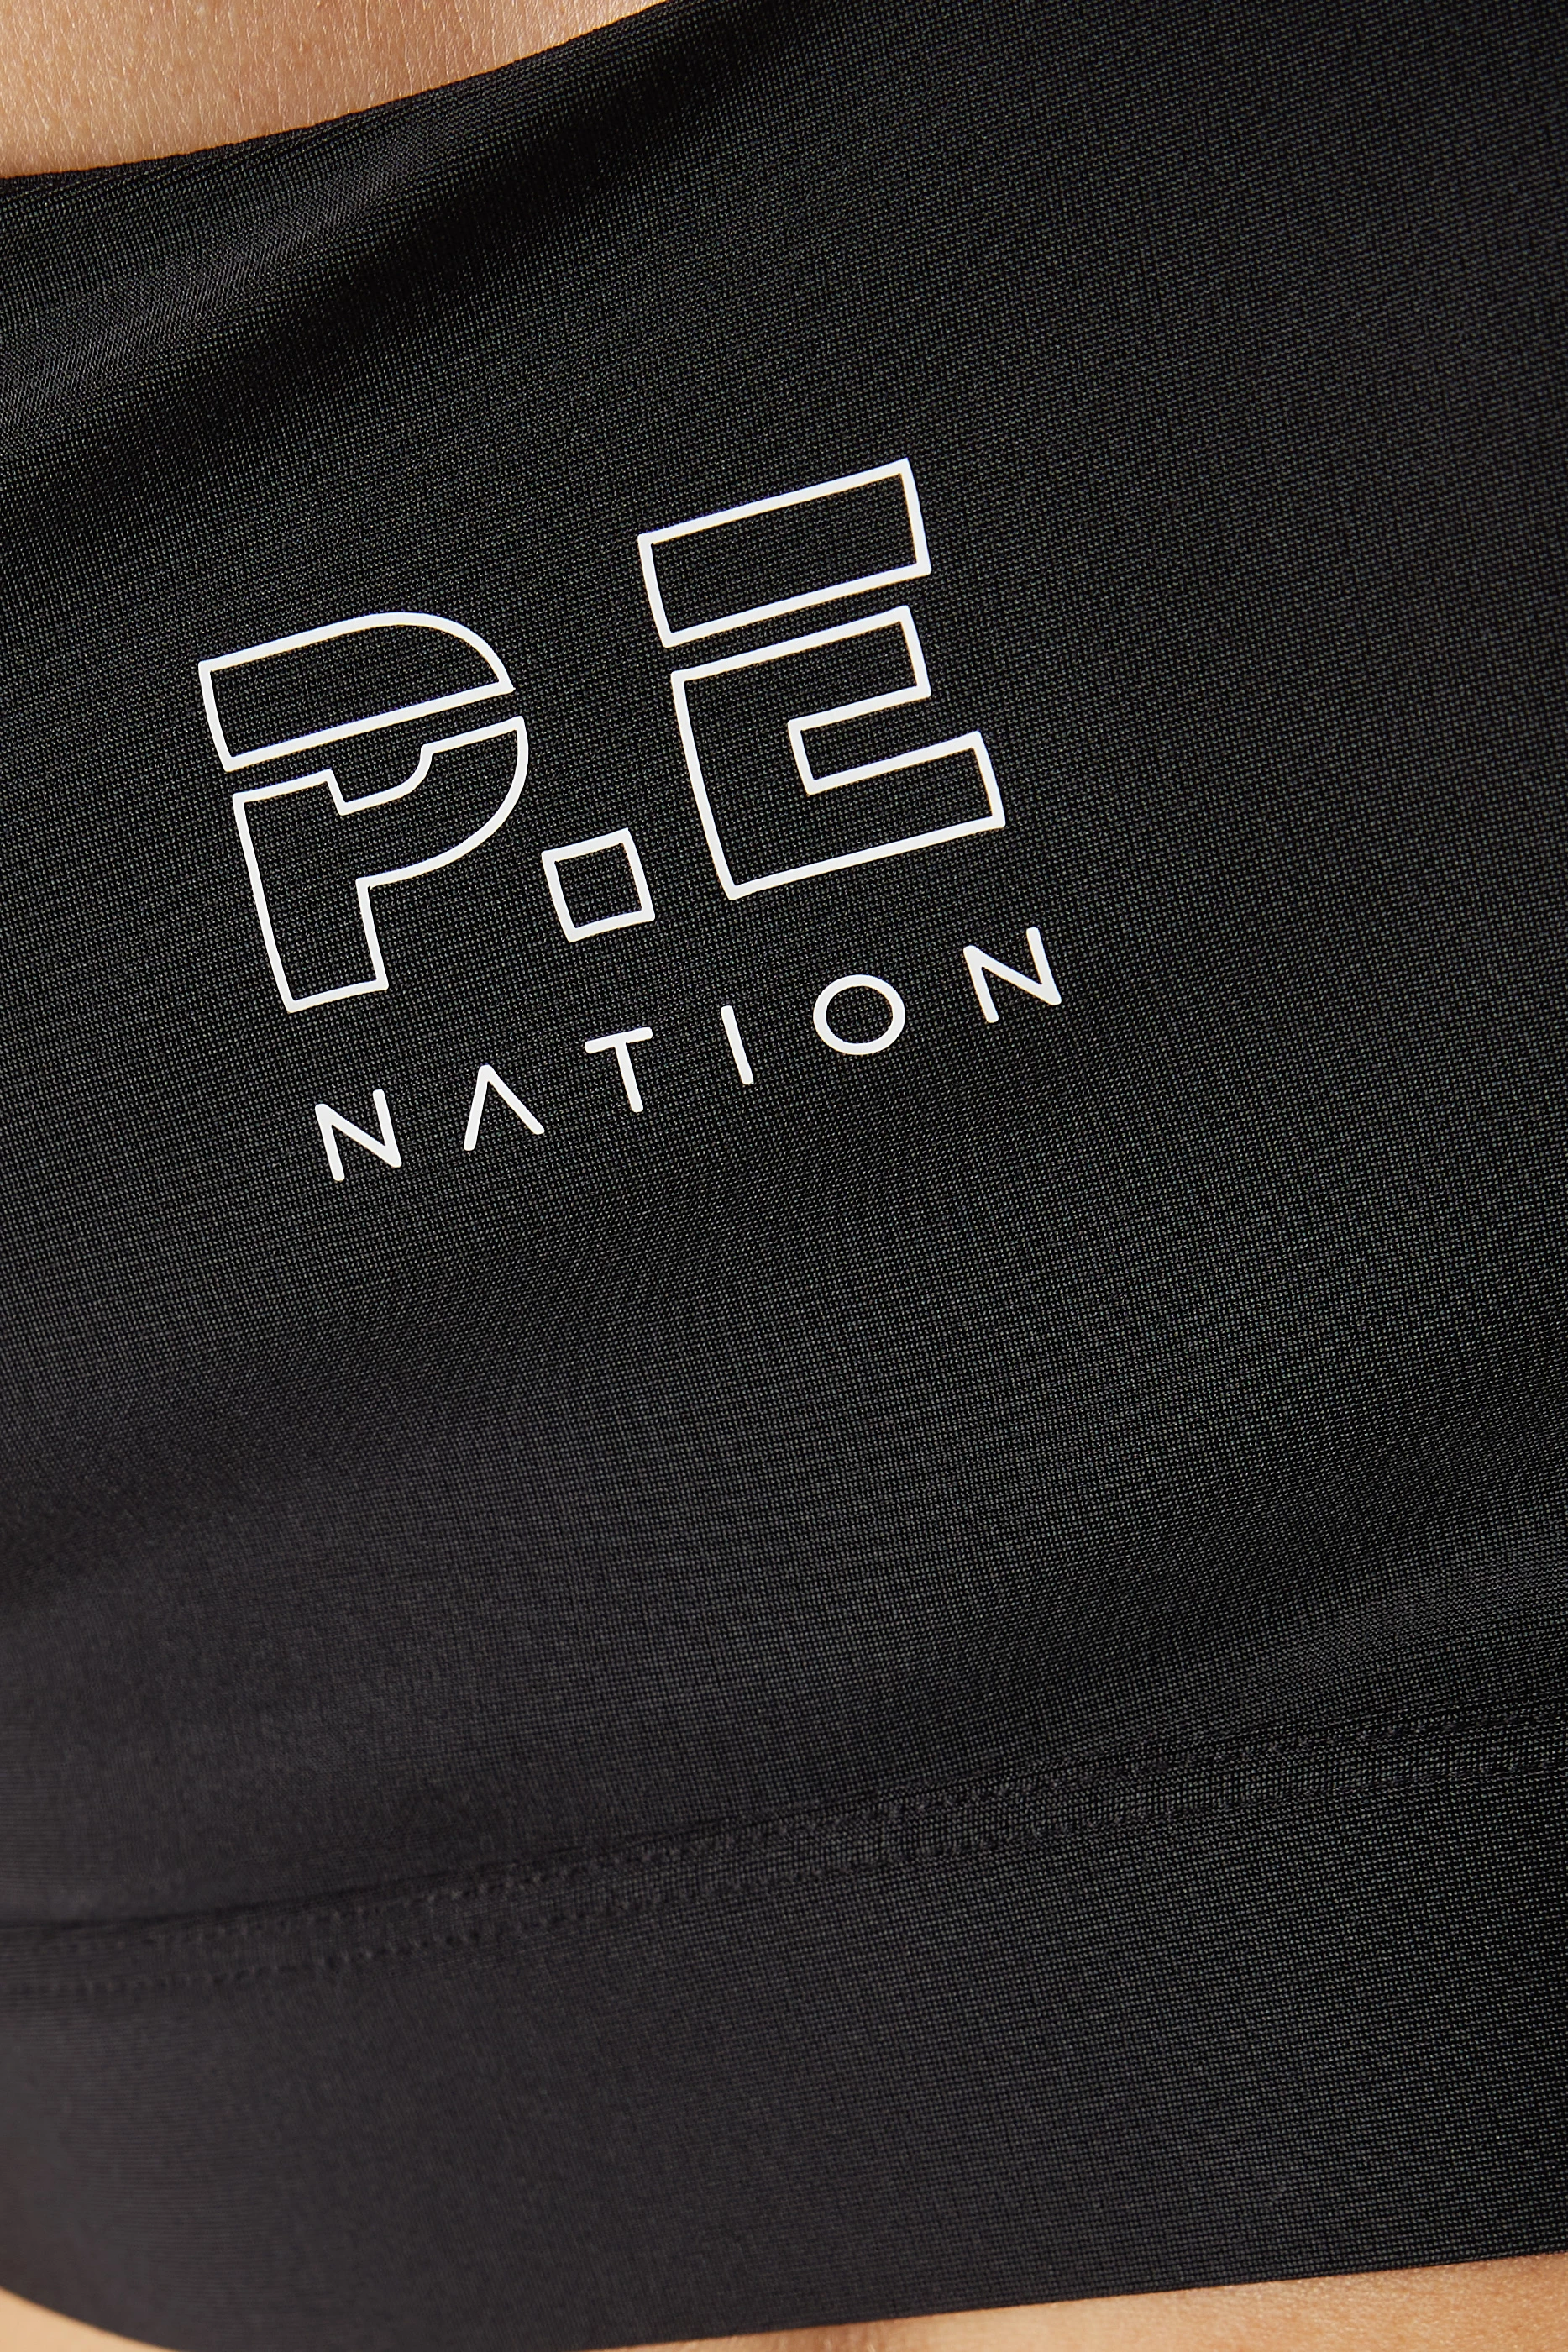 Buy P.E. Nation Black Long Range Sports Bra for Women in UAE